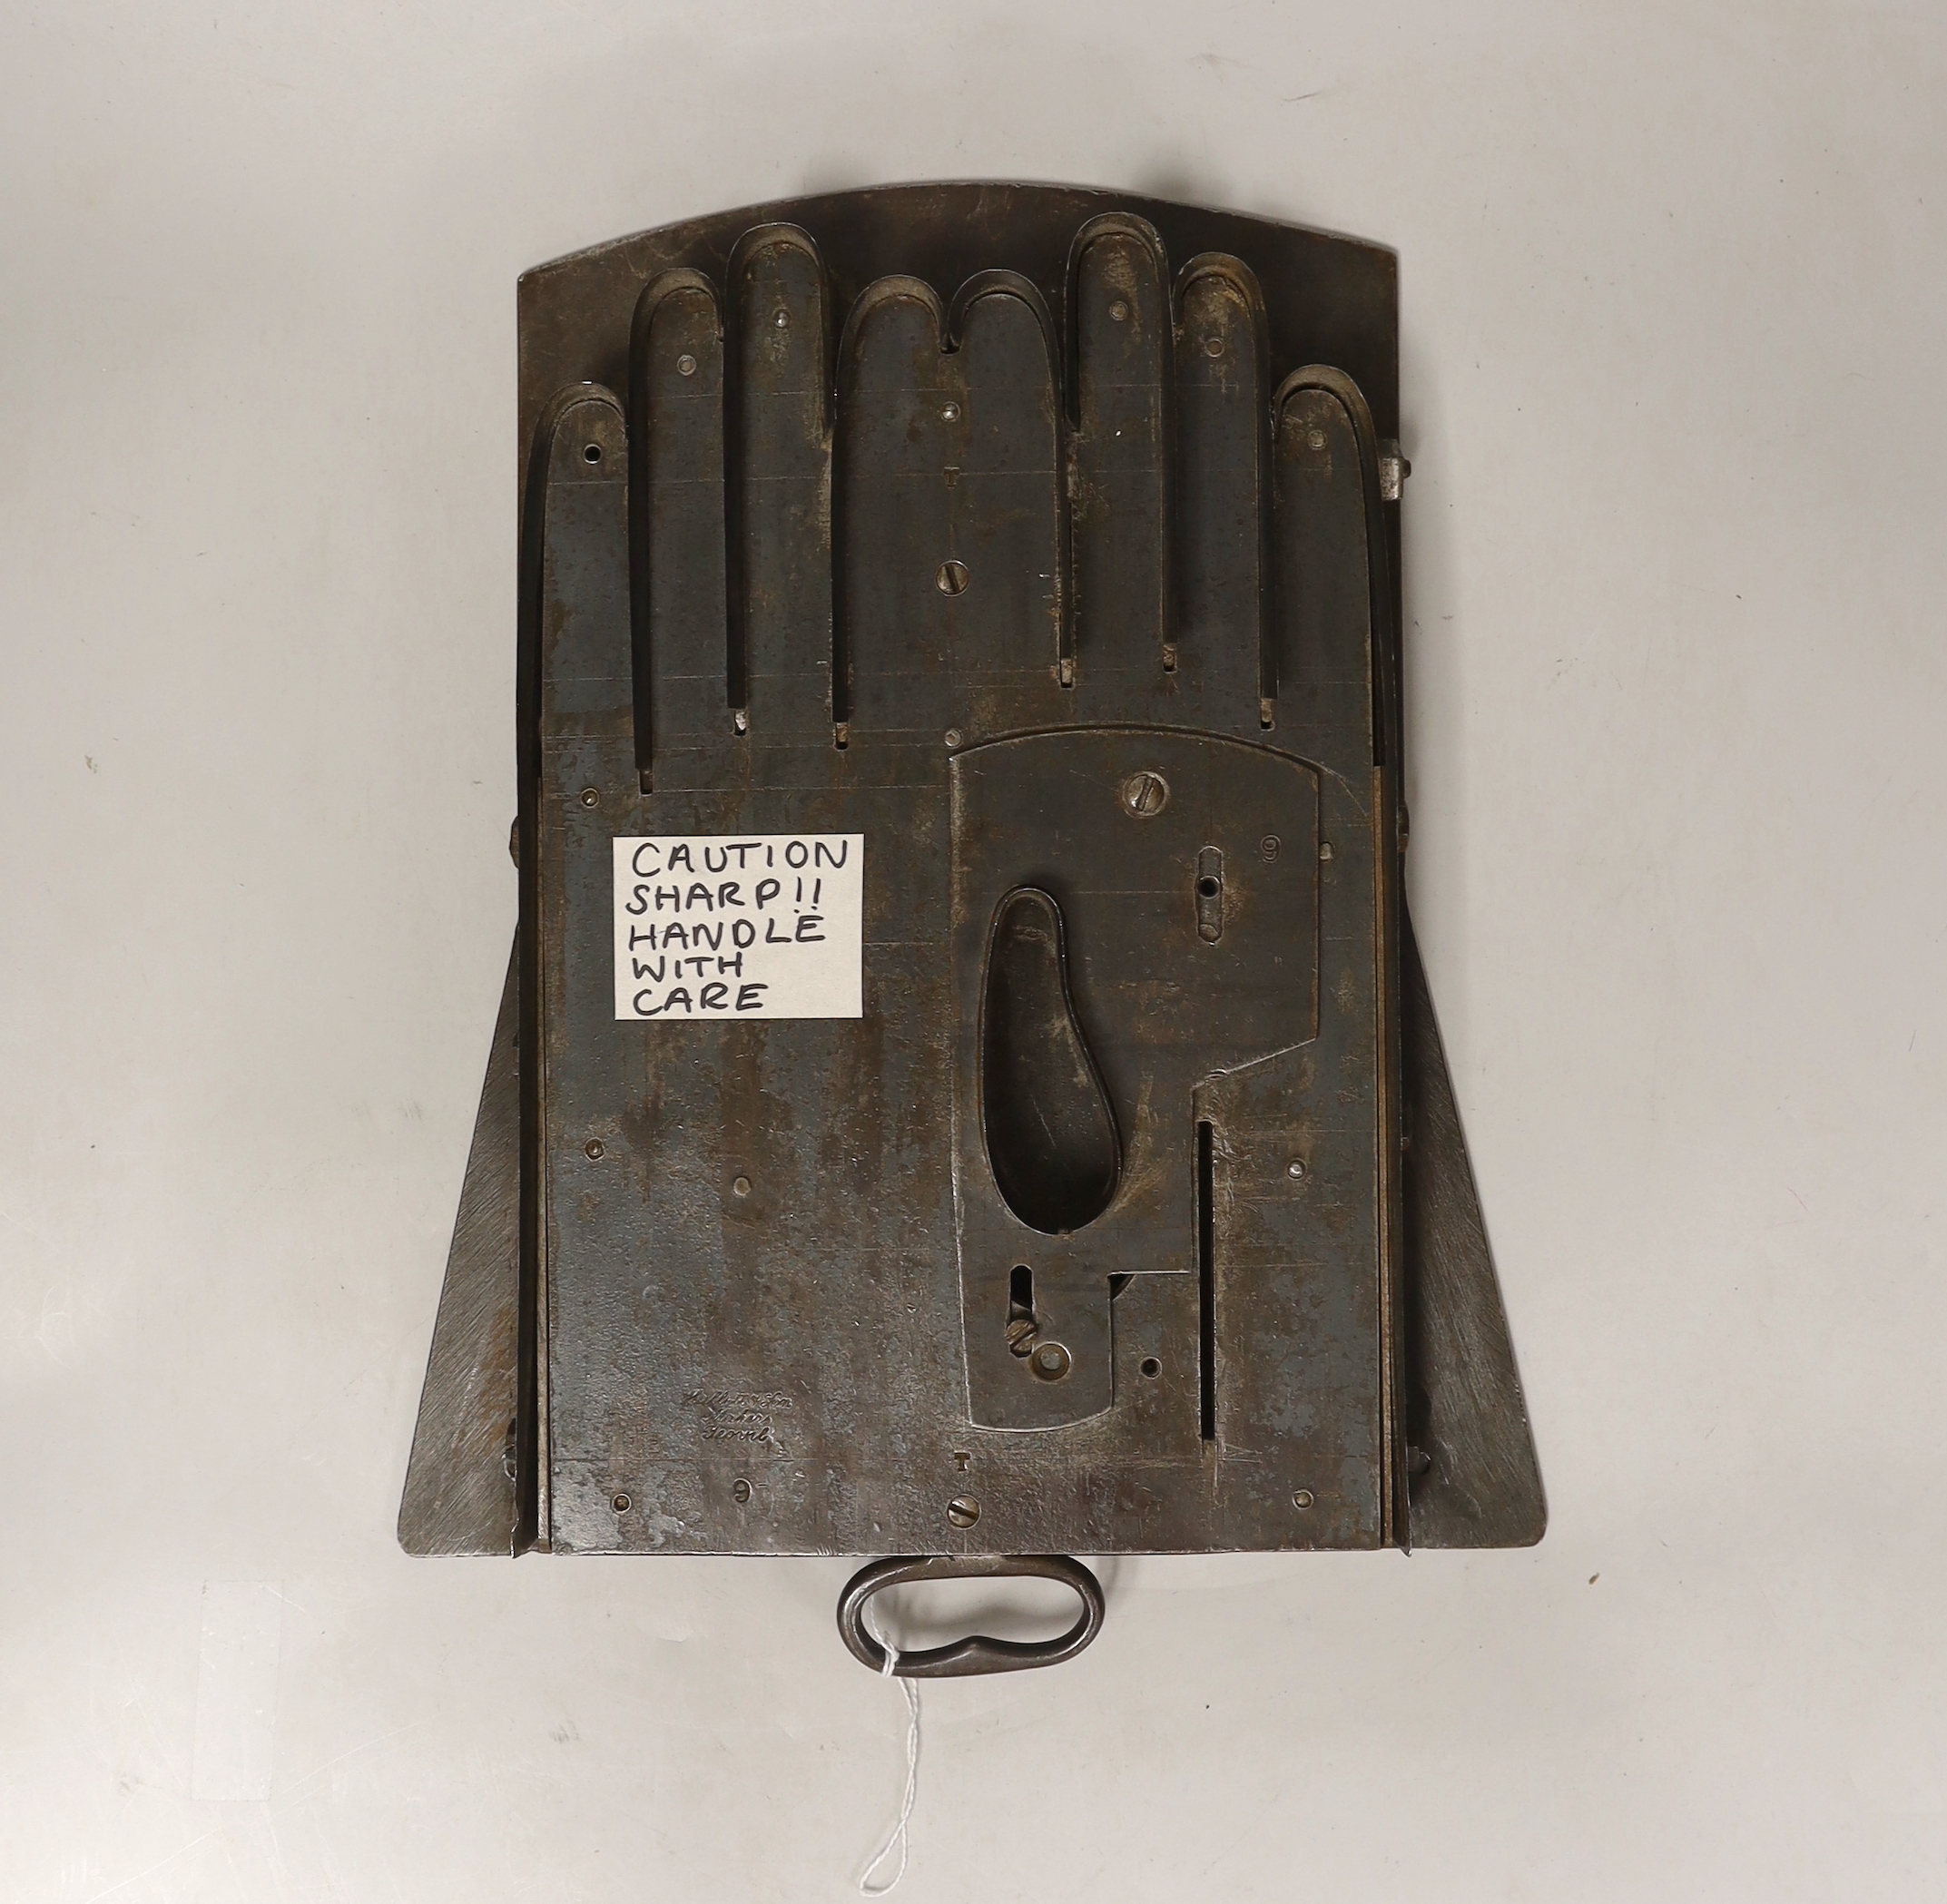 A Hallett & Son glove mould cutter